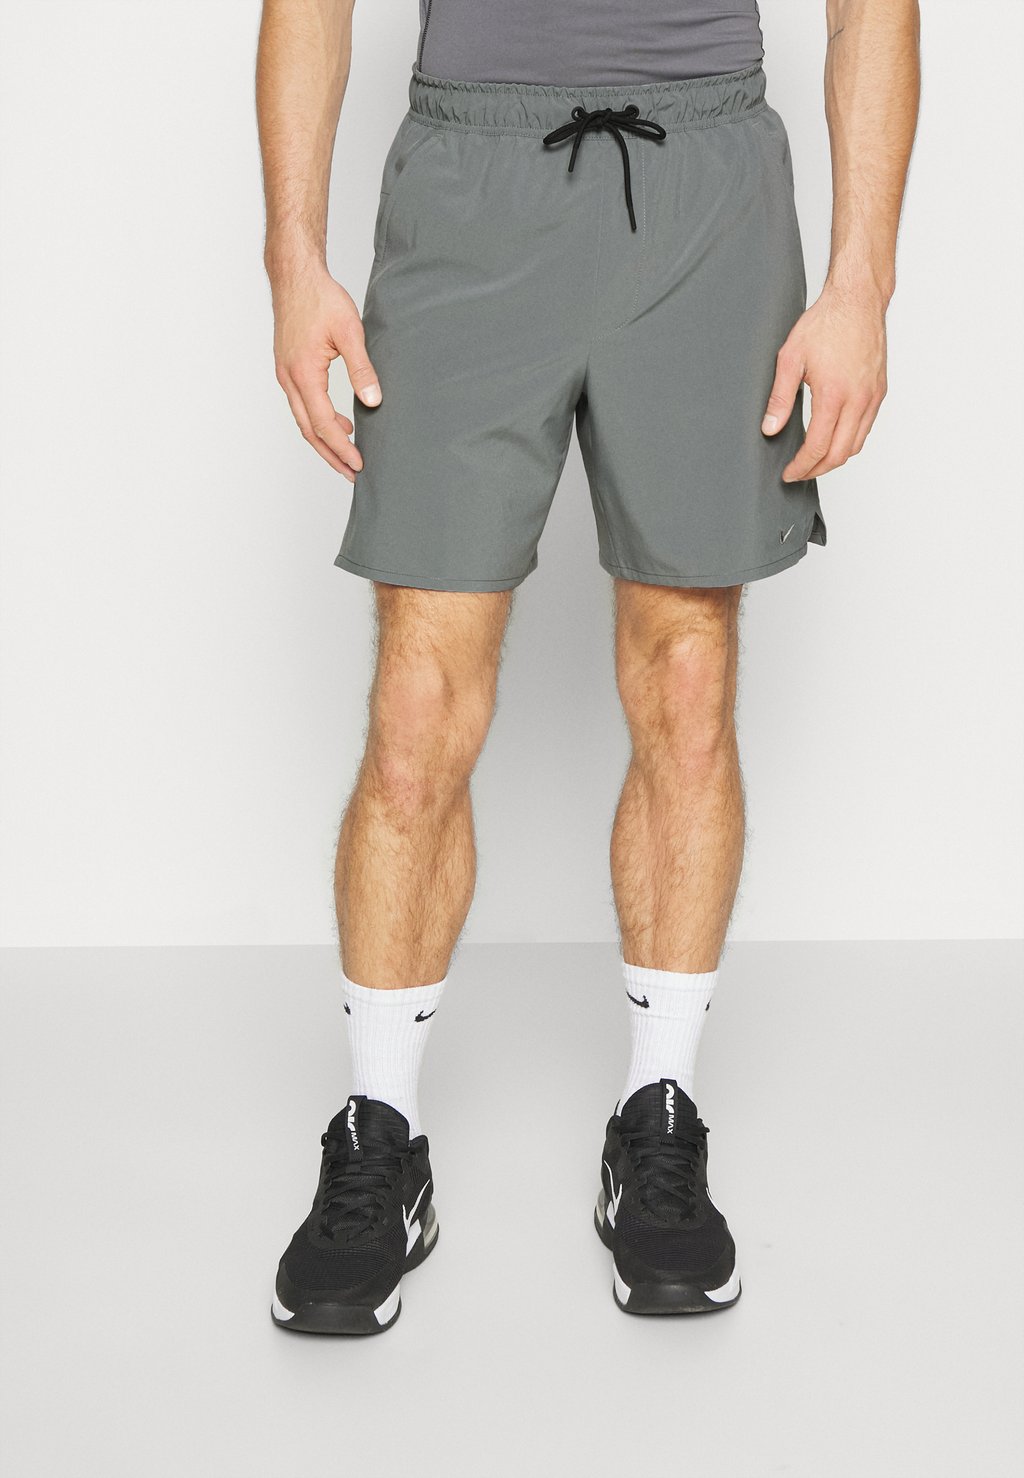 Спортивные шорты UNLIMITED Nike, дымчато-серый/черный